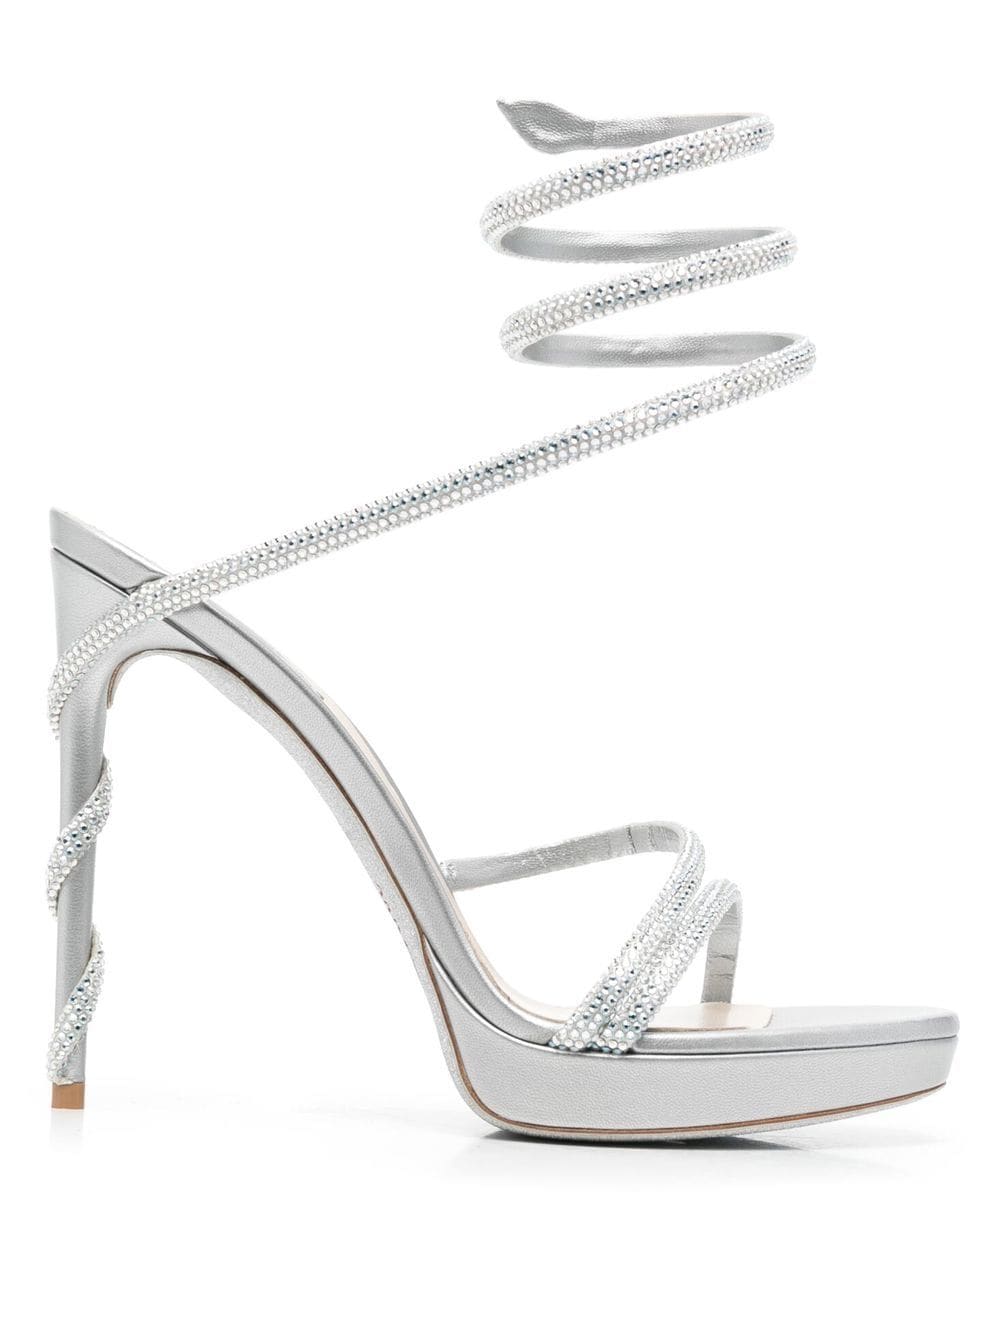 René Caovilla Margot crystal-embellished platform sandals